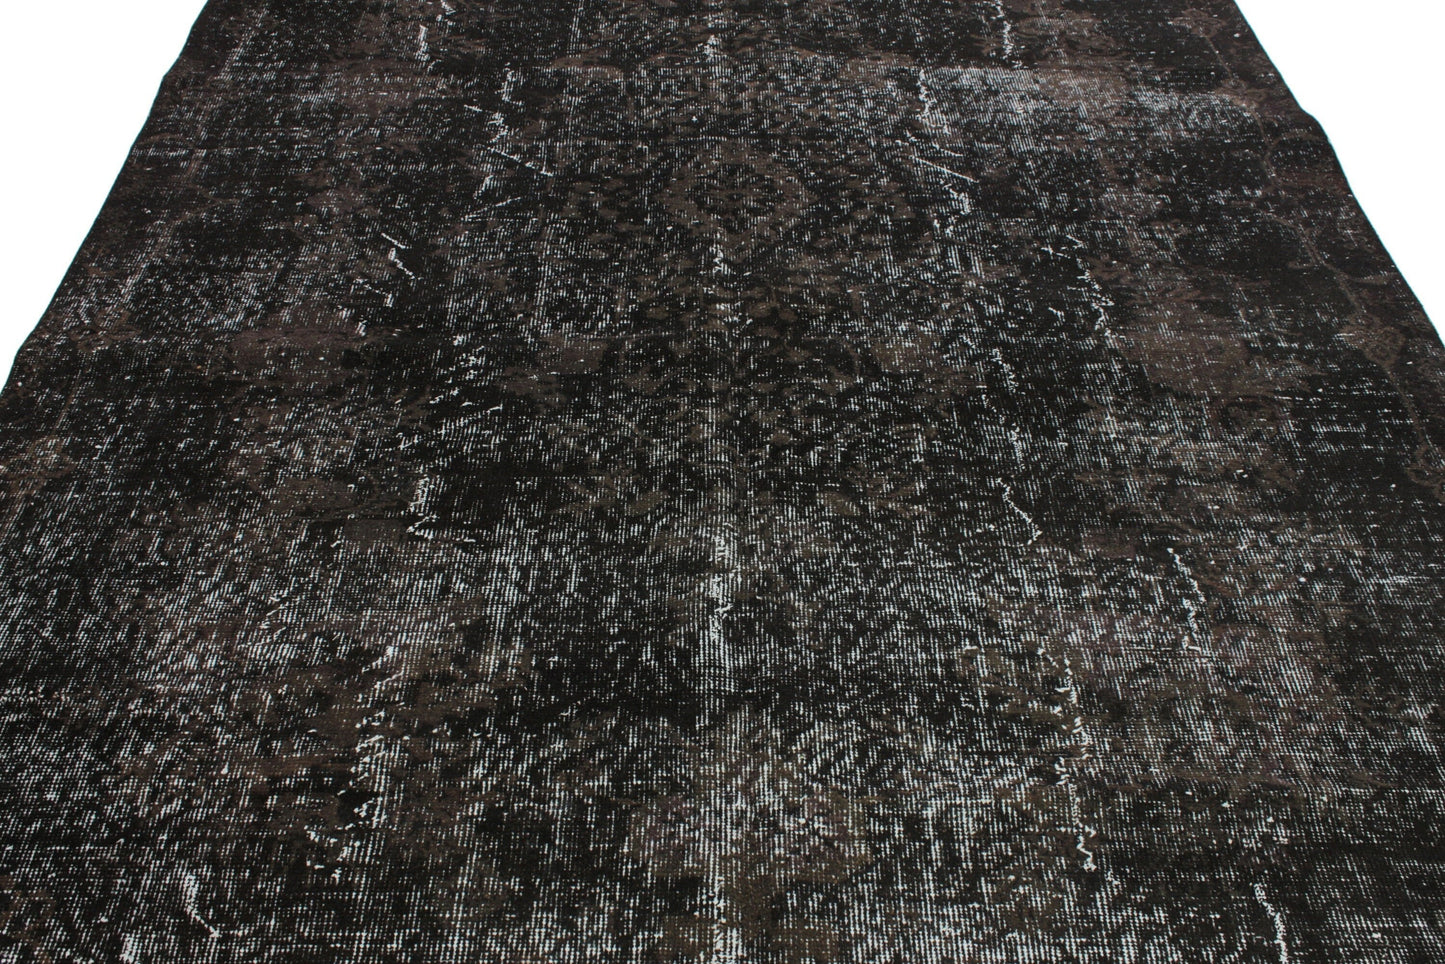 6x8 Black Overdye Vintage Rug, Turkish Rug Black ,Unique Rug, Anatolia Rug,Distressed Rug, Minimalist Rug, Carpet rug, Bedroom rug, 3168